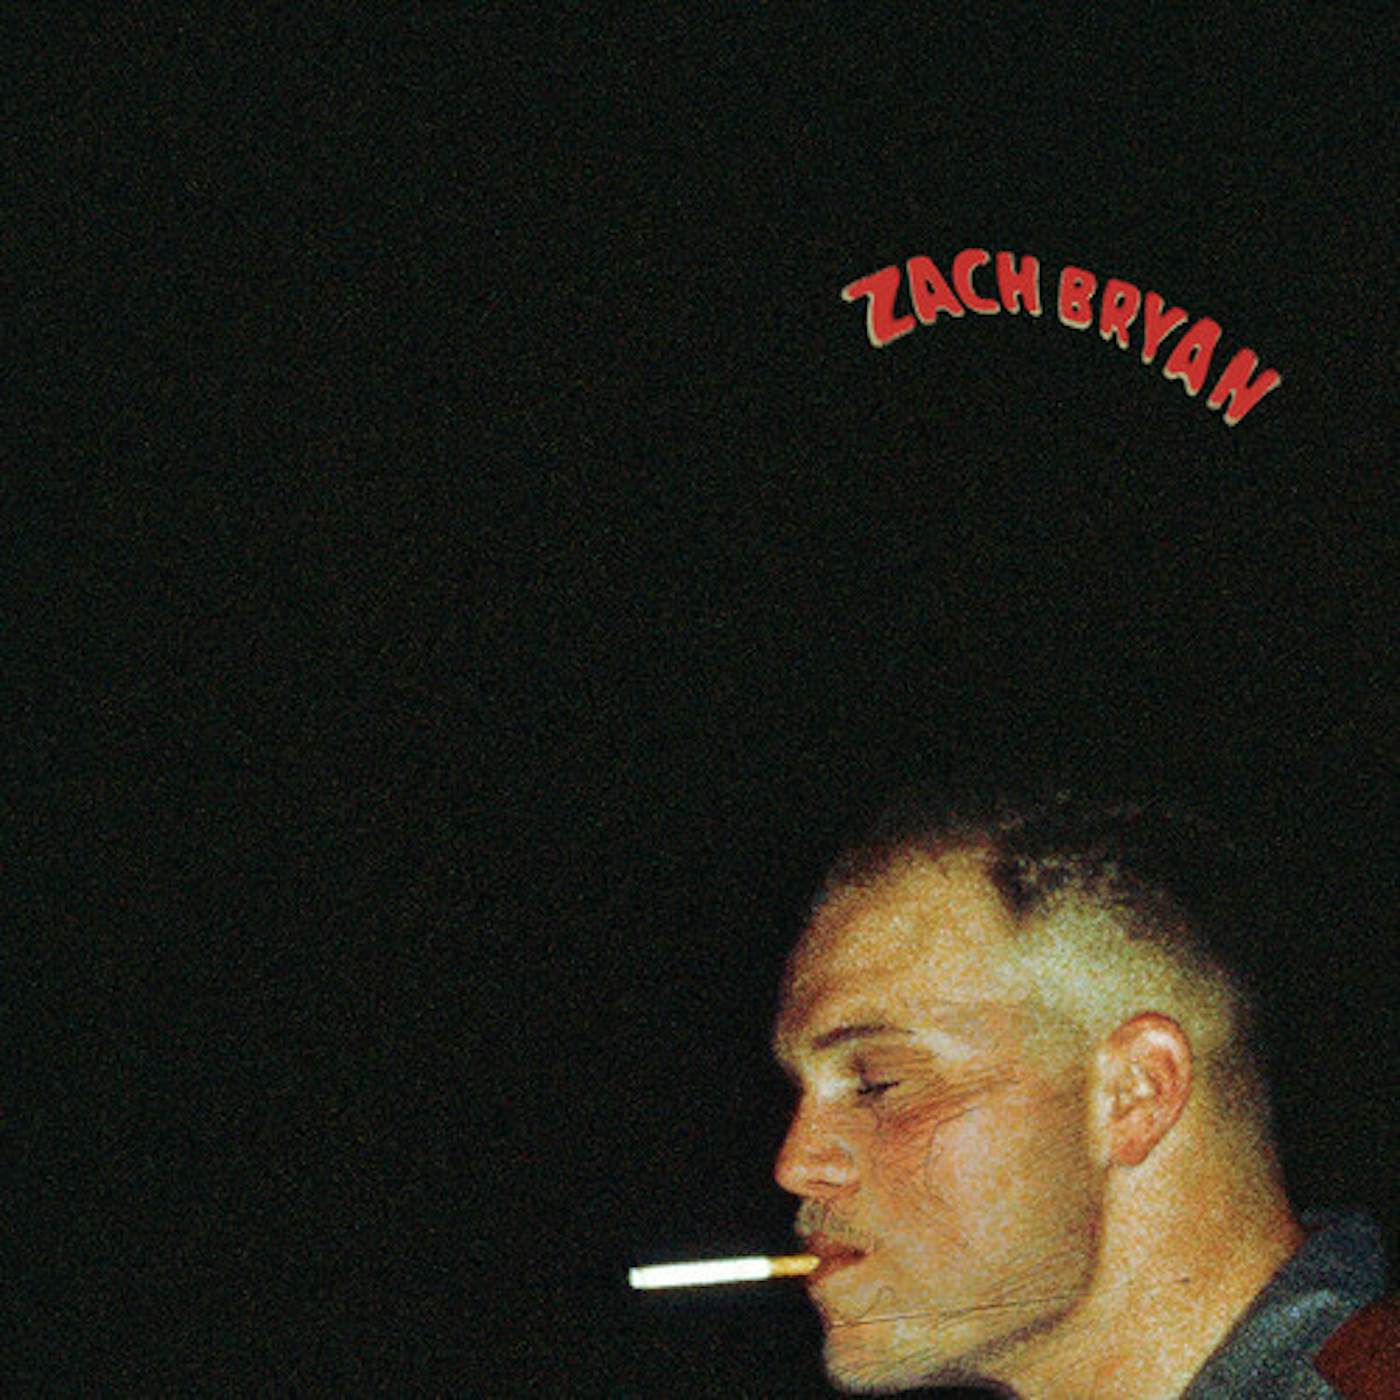  Zach Bryan (2LP) (Explicit Content) Vinyl Record